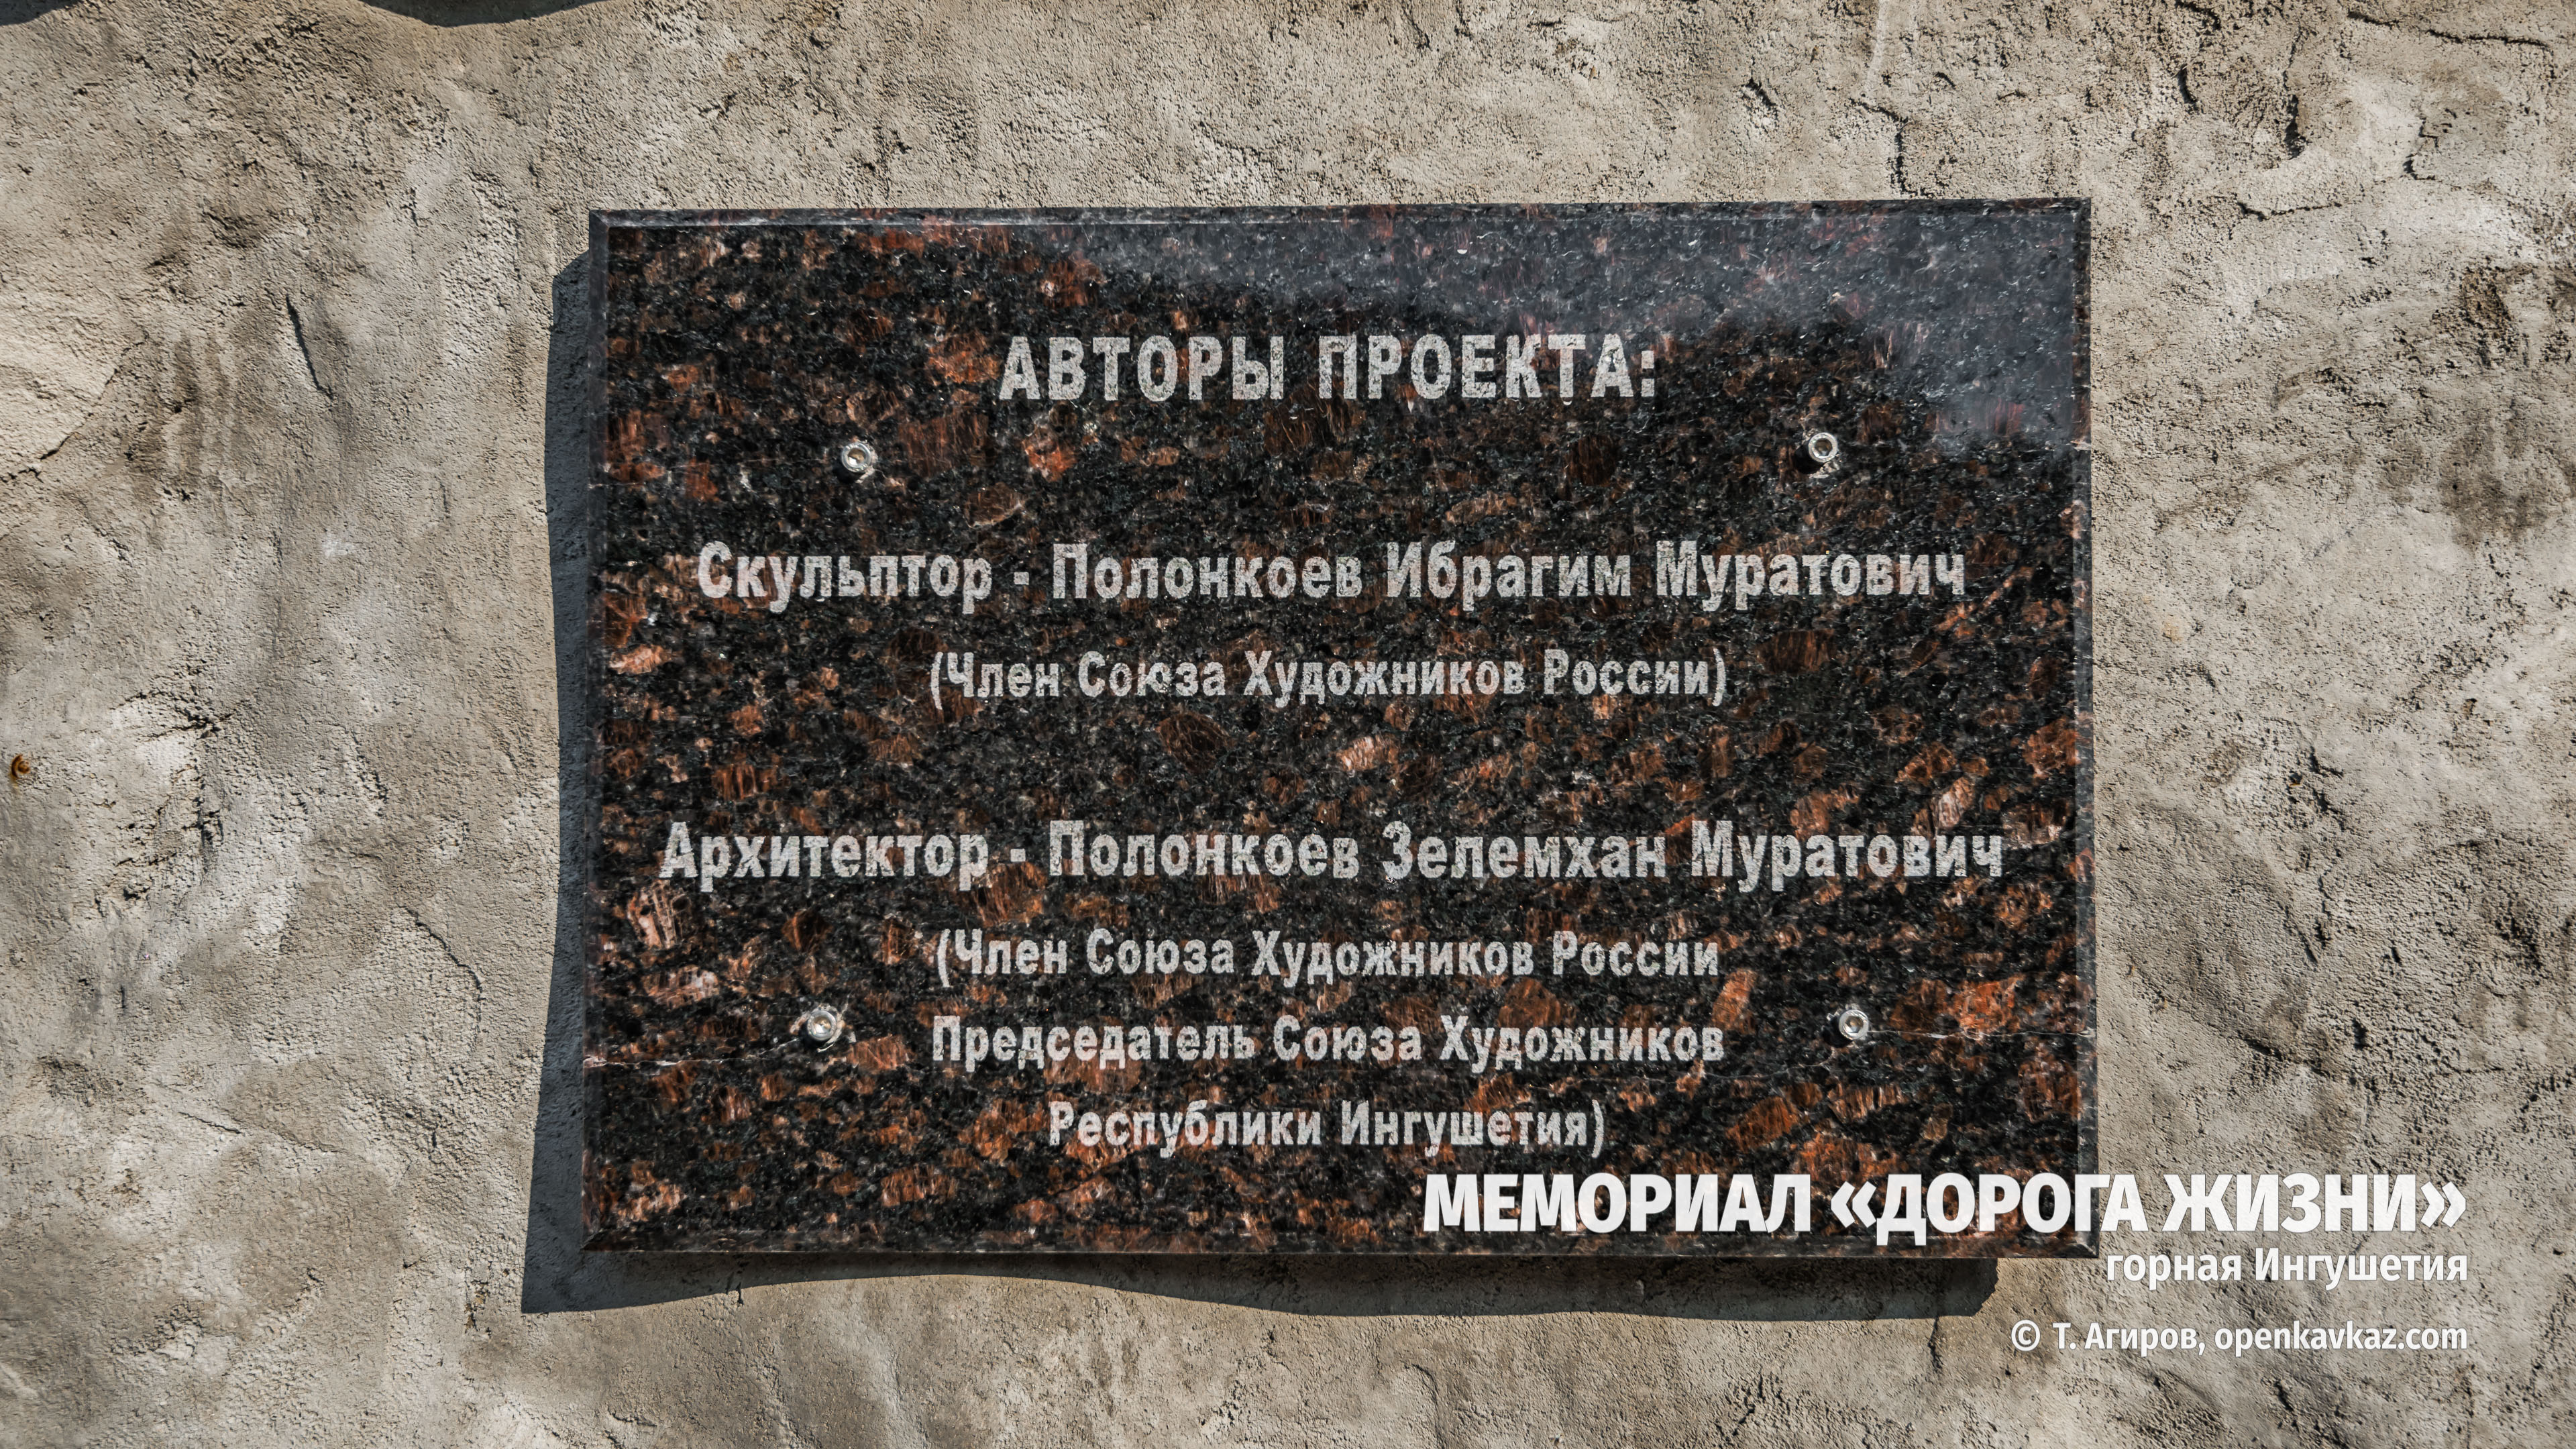 Мемориал "Дорога жизни", Ингушетия